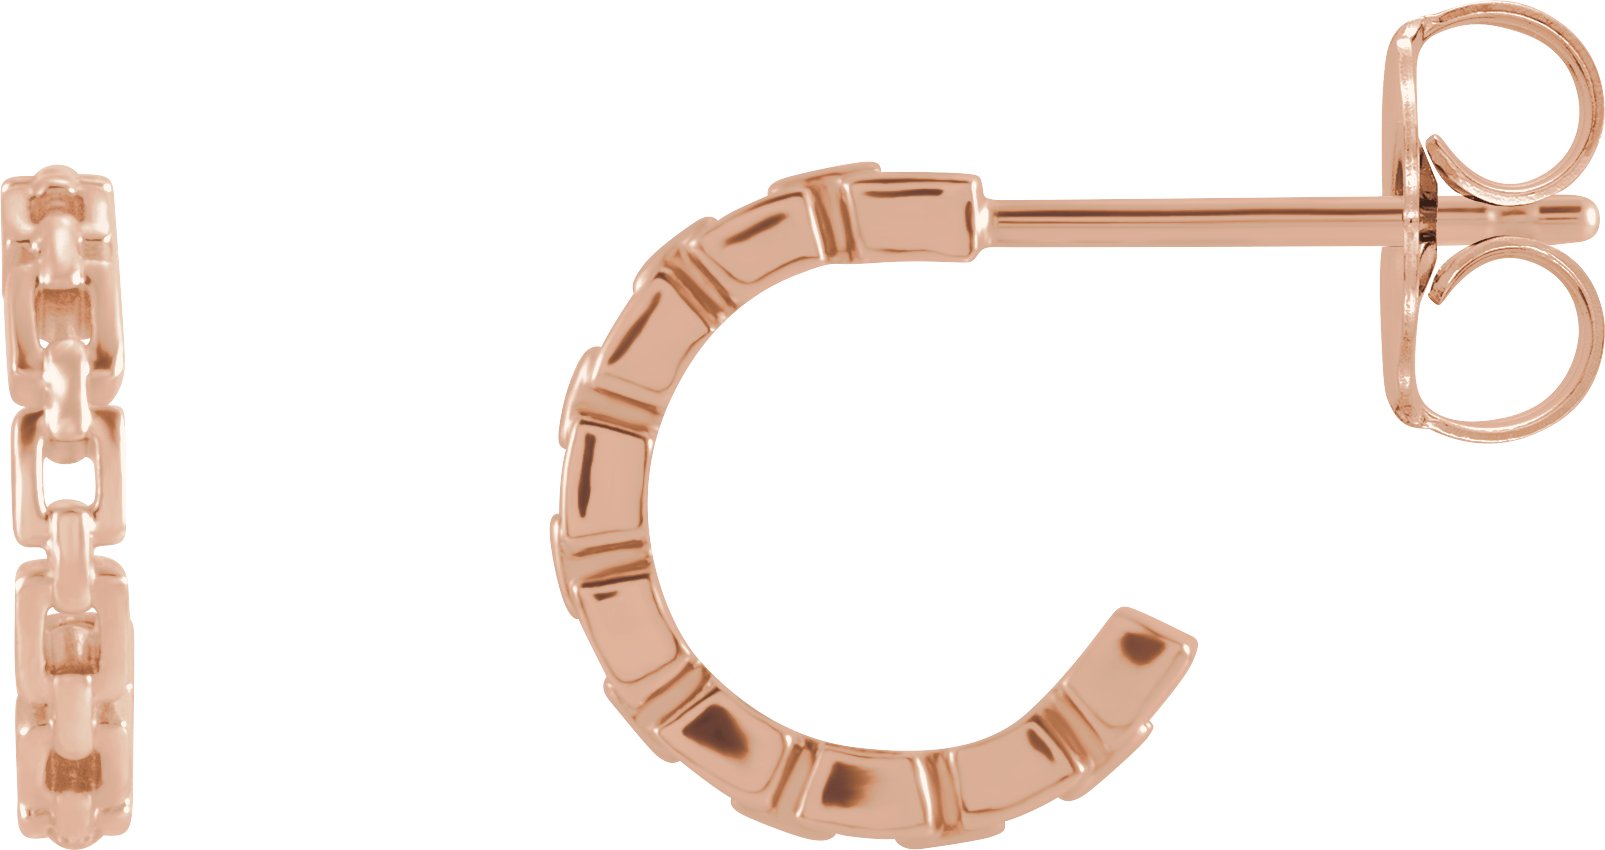 14K Rose 10.23 mm Chain Link Hoop Earrings Ref. 16854690